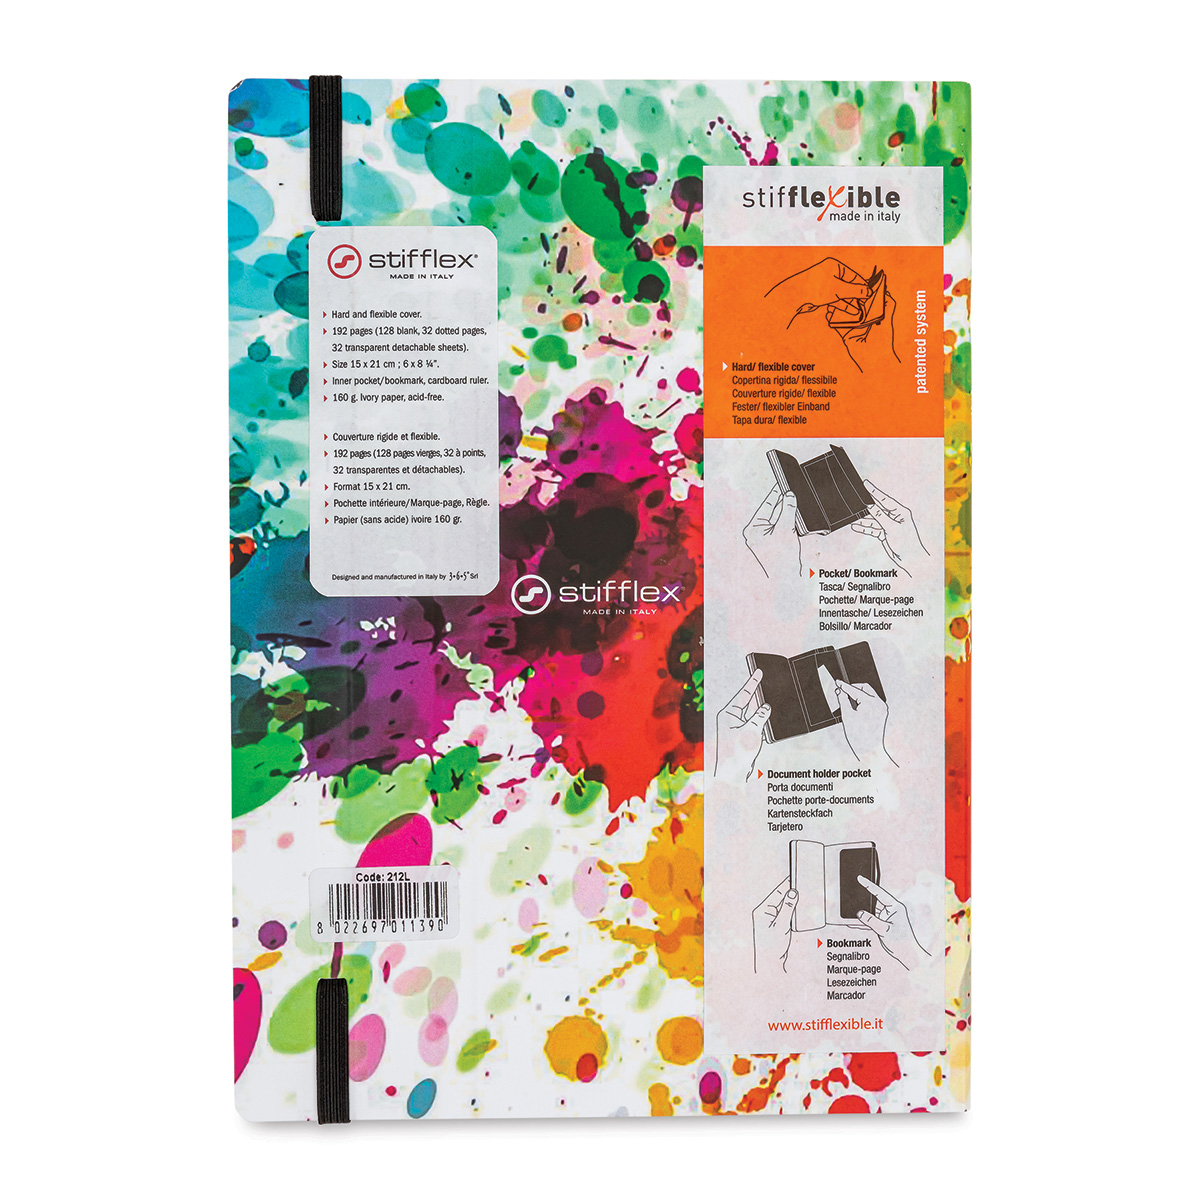 Stifflex Artwork! Color Splash Sketchbook